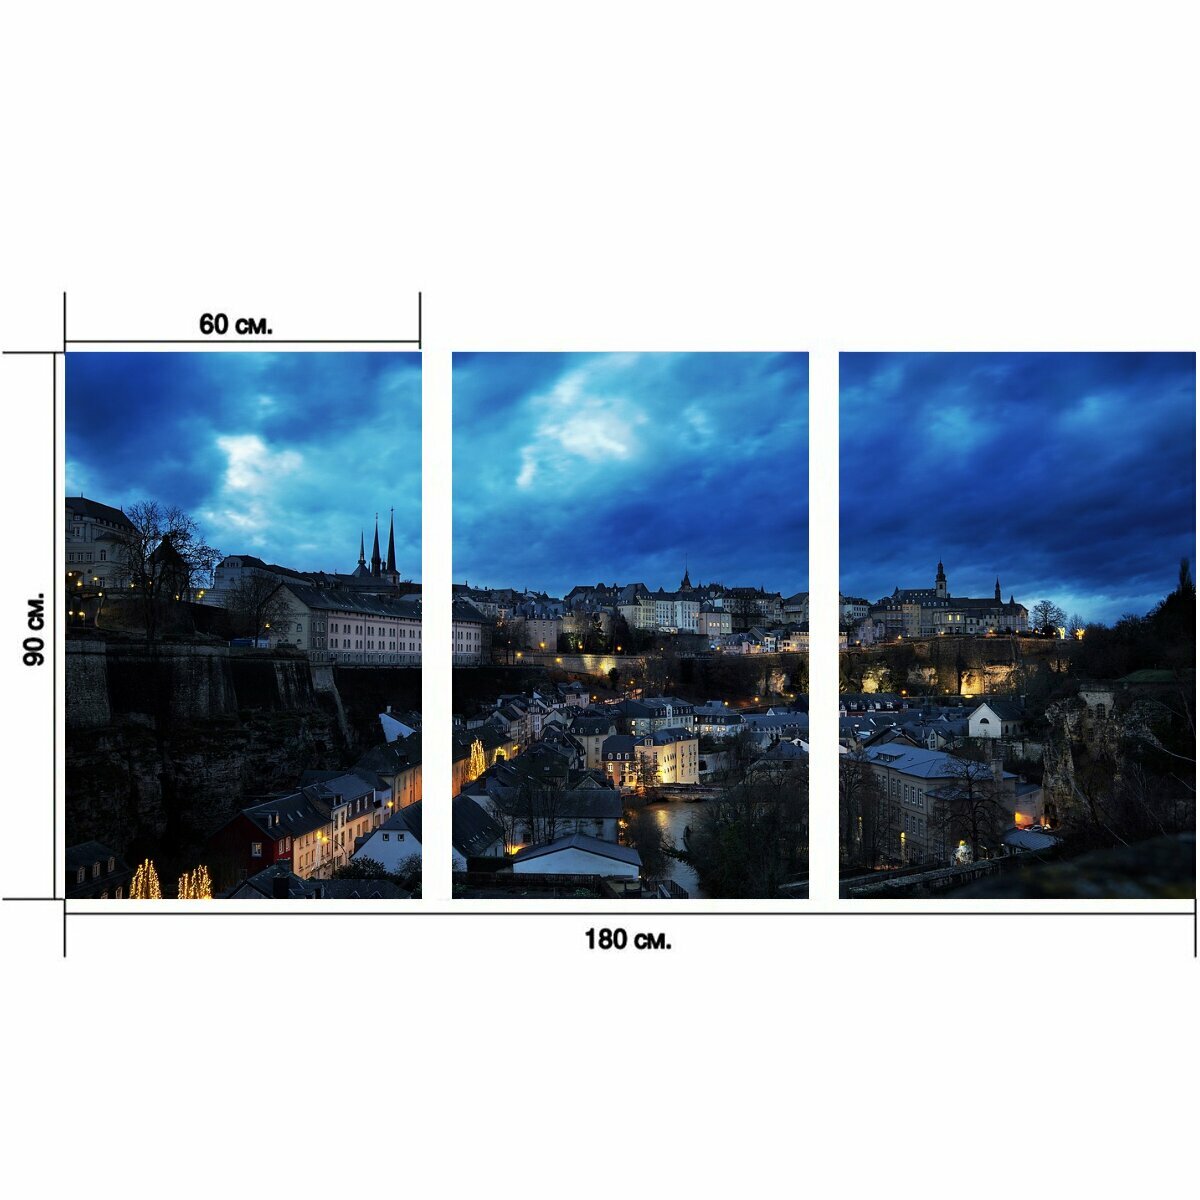 Модульный постер "Панорама, город, городской ландшафт" 180 x 90 см. для интерьера